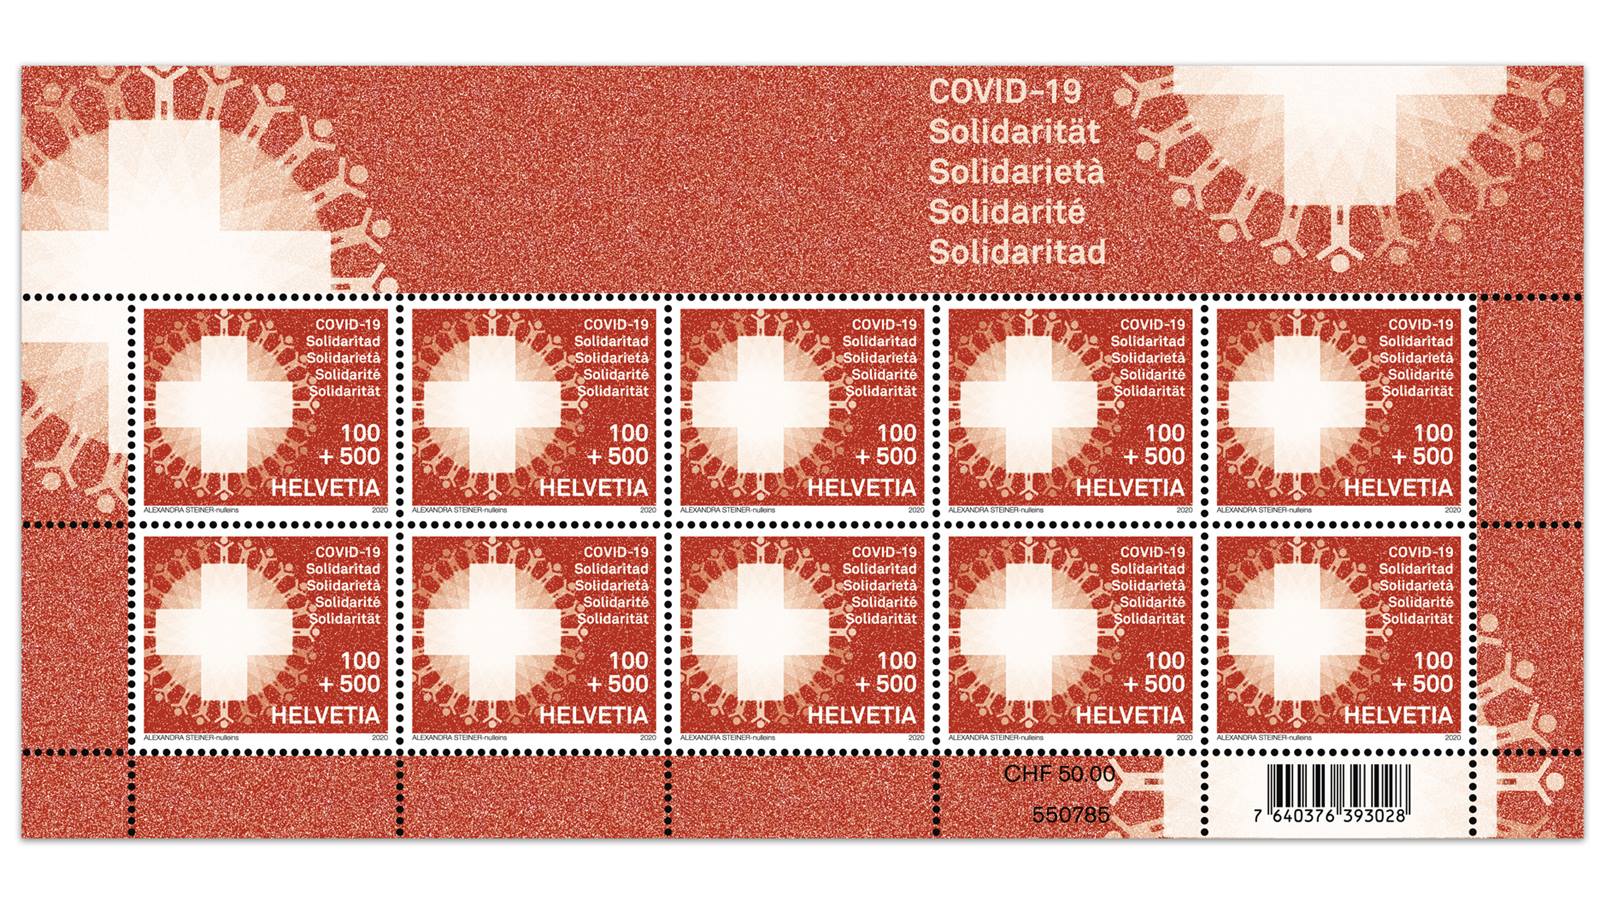 Coronavirus: solidarietà anche attraverso un francobollo, in Svizzera